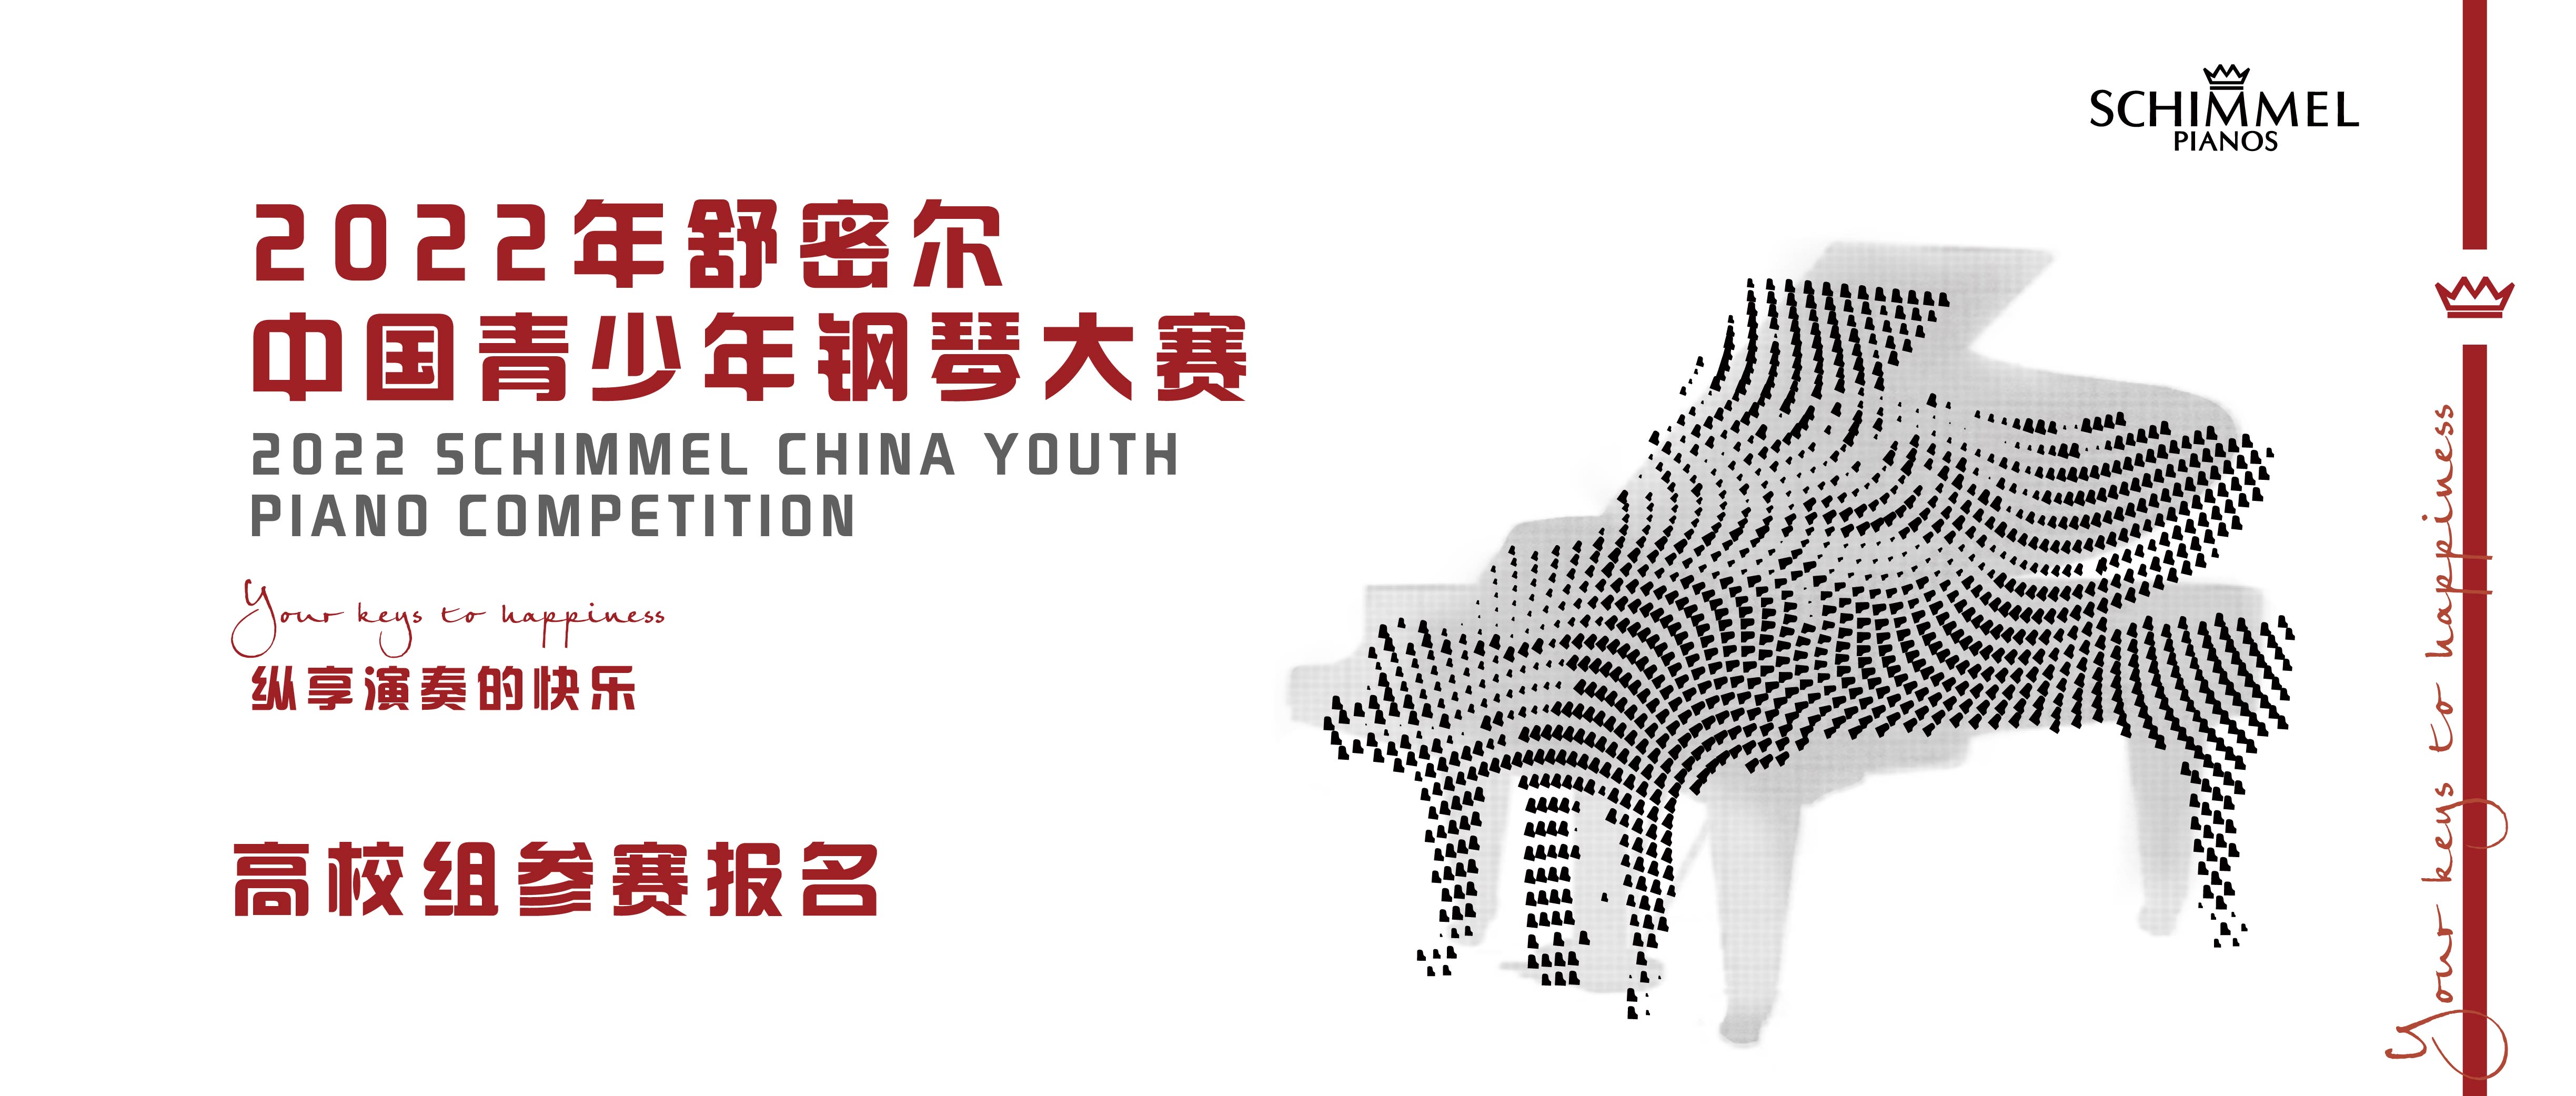 2022年舒密尔中国青少年钢琴大赛高校组参赛报名看这里！